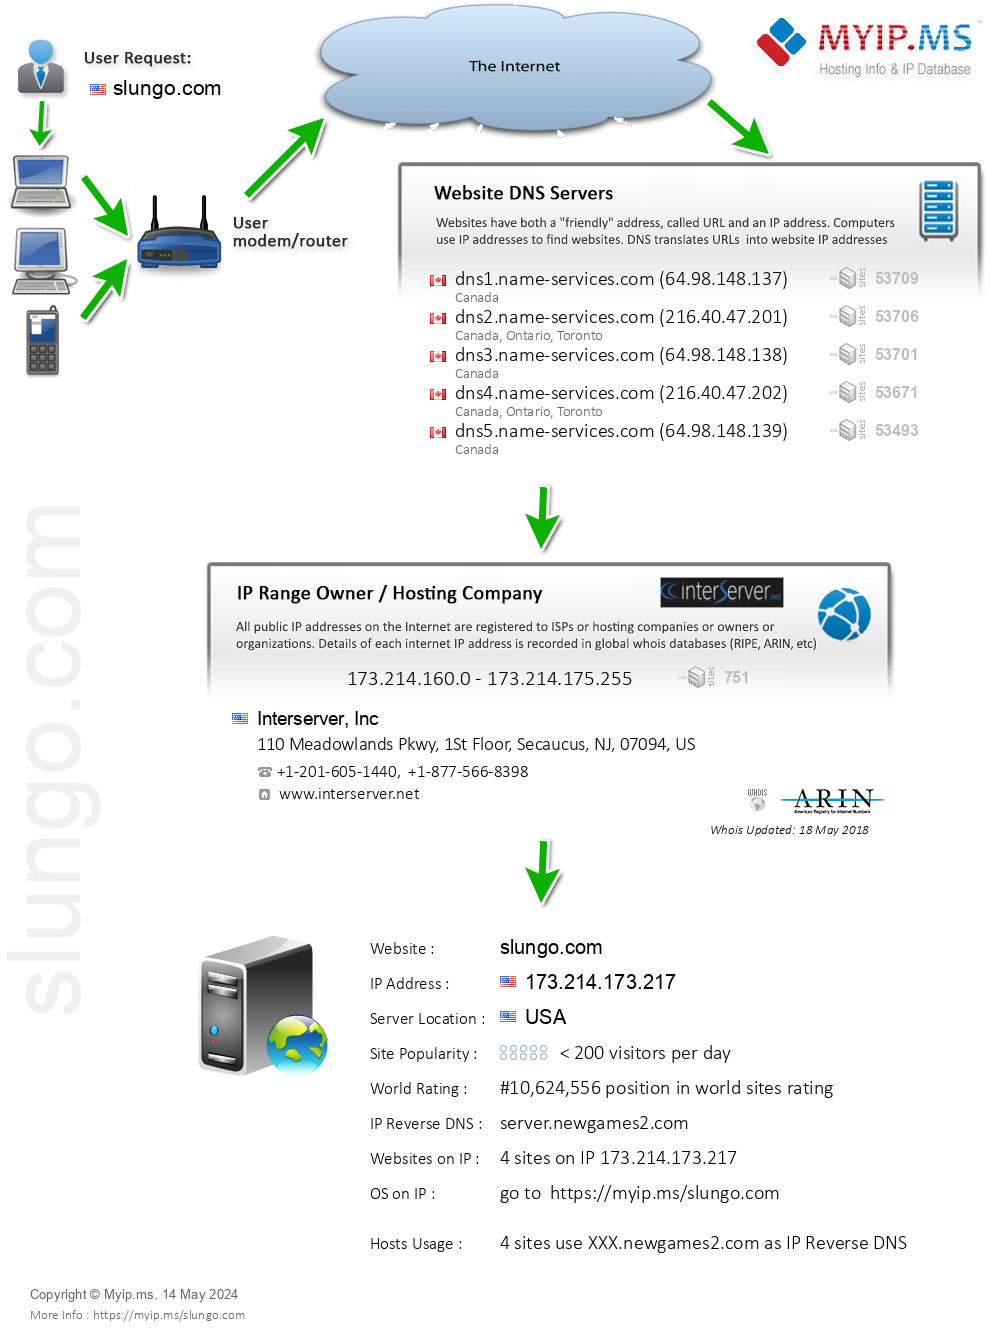 Slungo.com - Website Hosting Visual IP Diagram